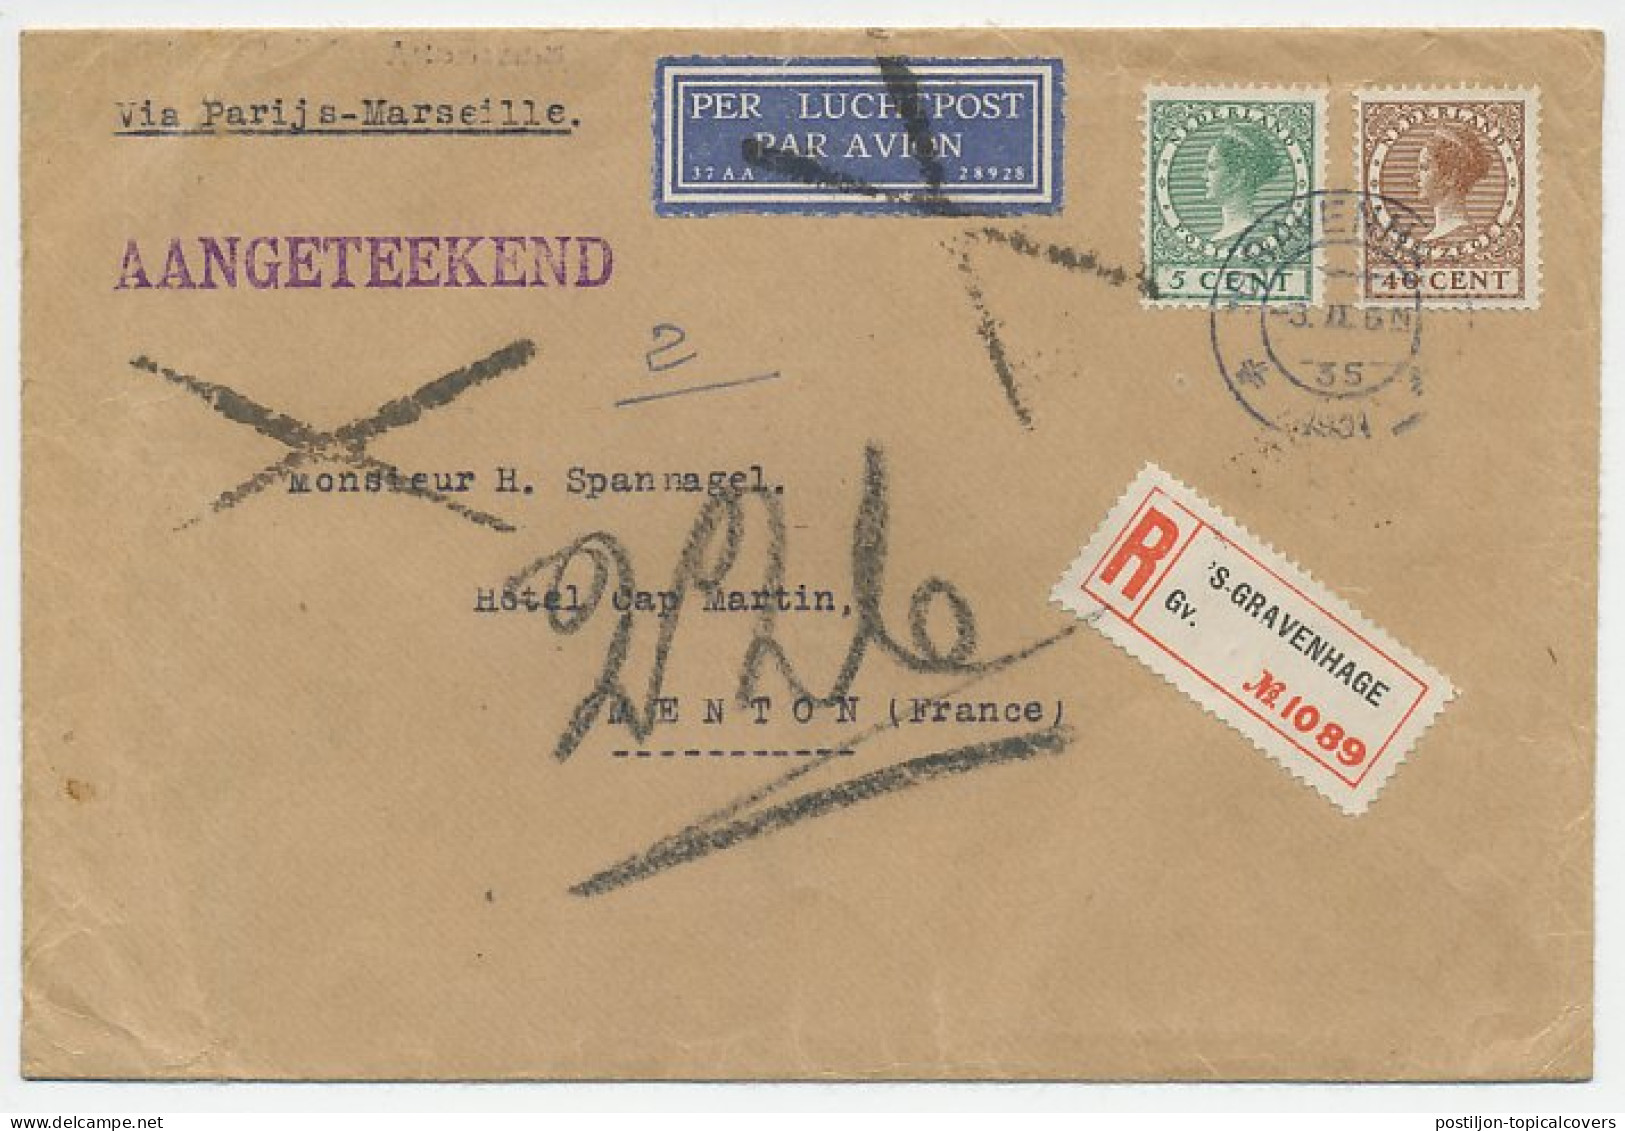 Em. Veth Den Haag - Menton Frankrijk 1931 - Unclassified